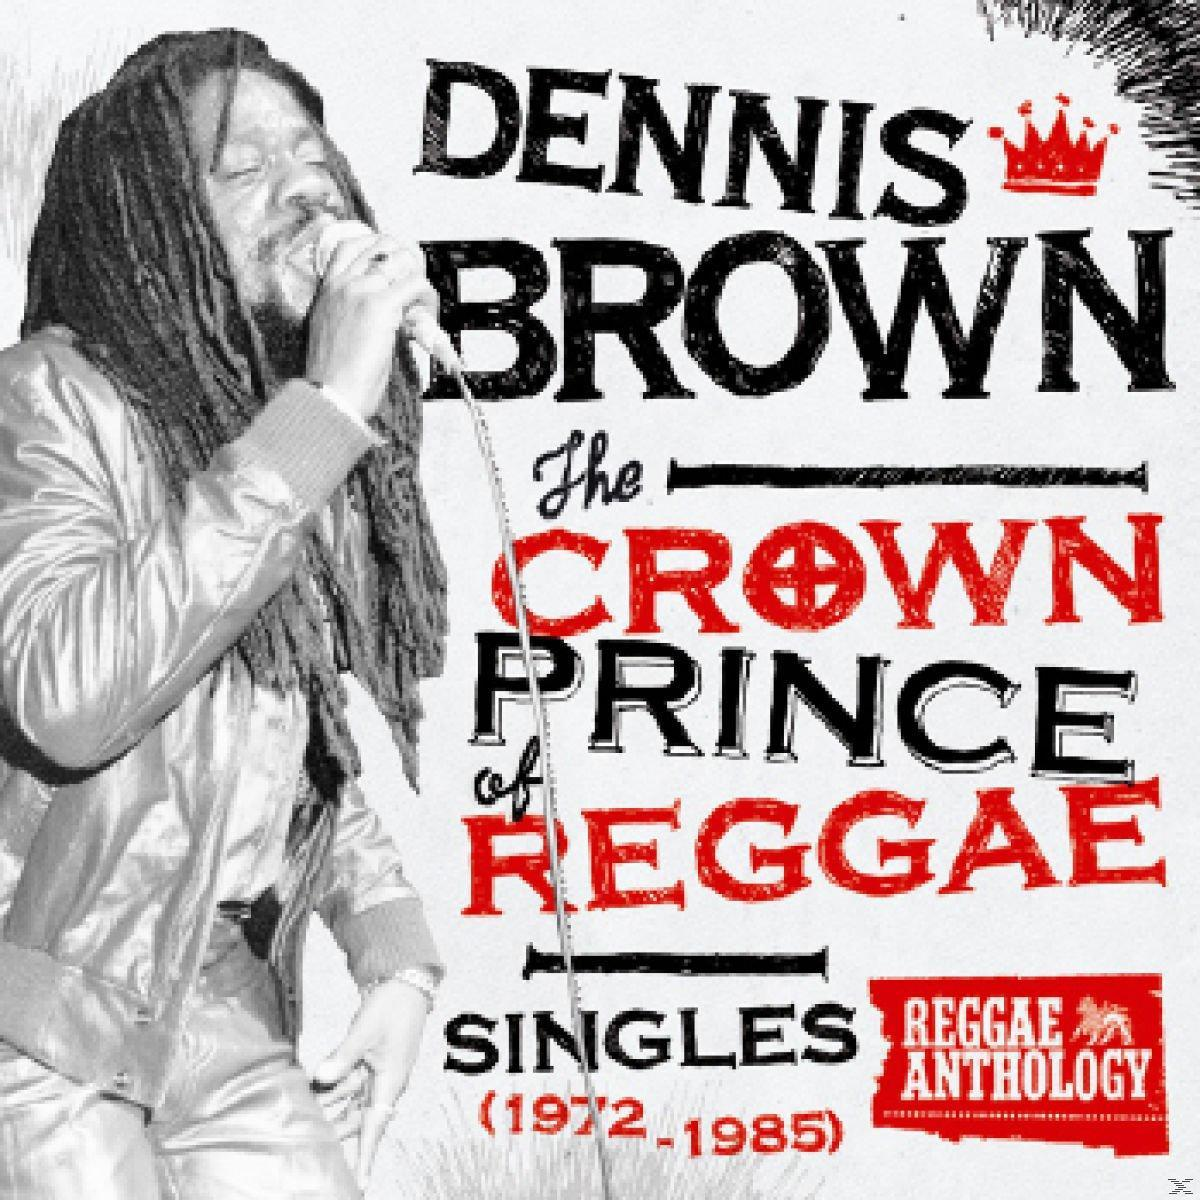 Prince Crown Brown Of - - Dennis (Vinyl) Reggae